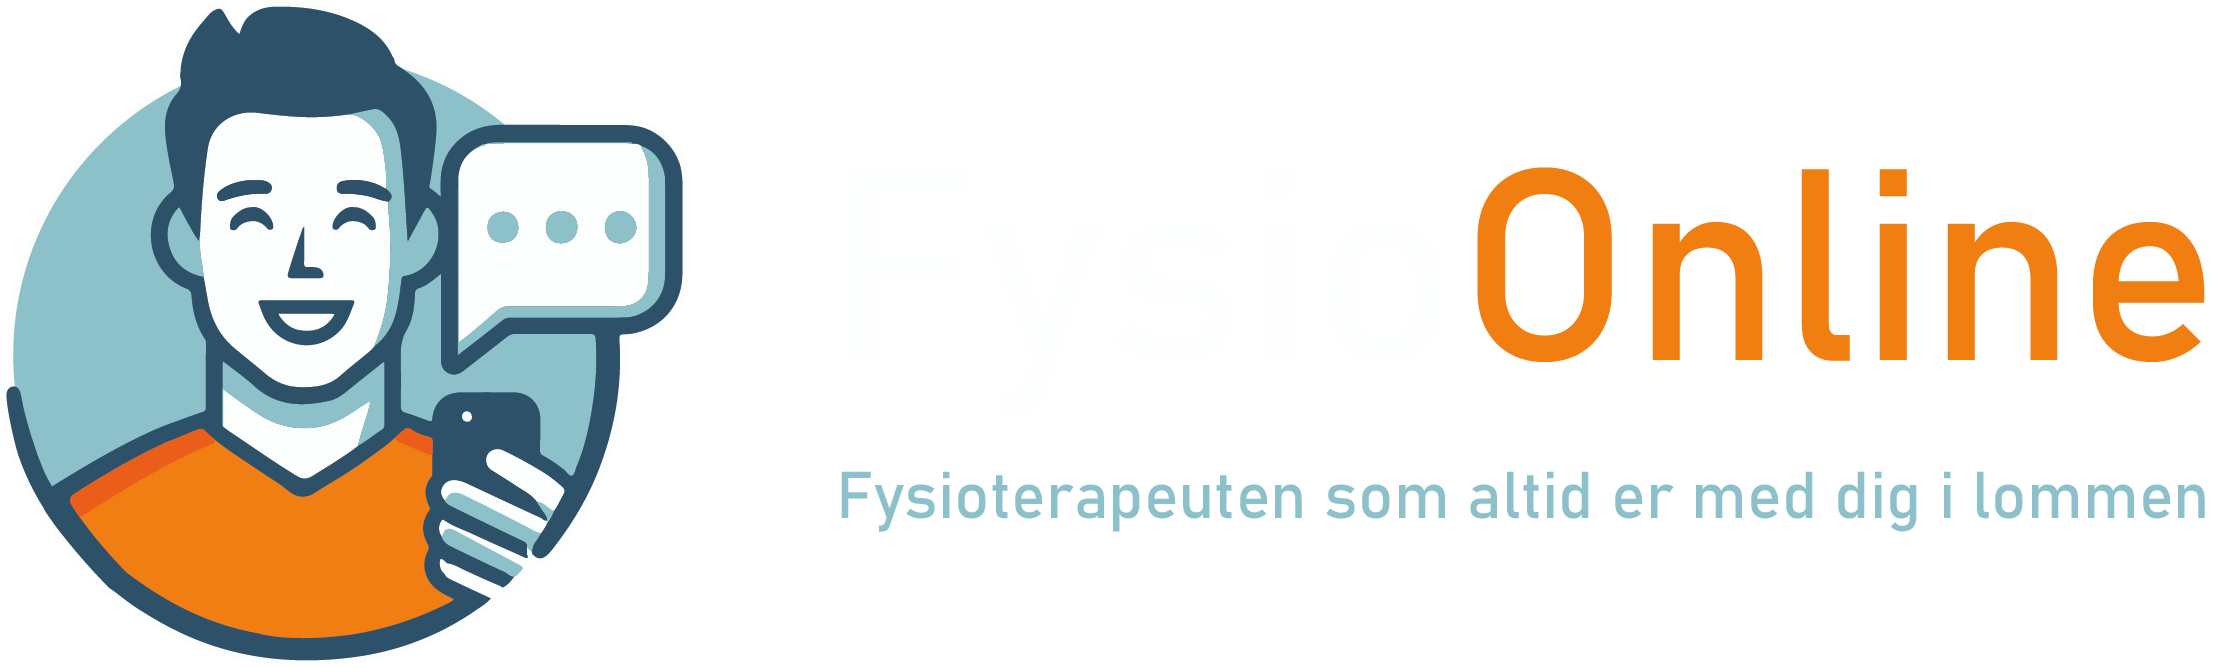 Logoet FysioOnline